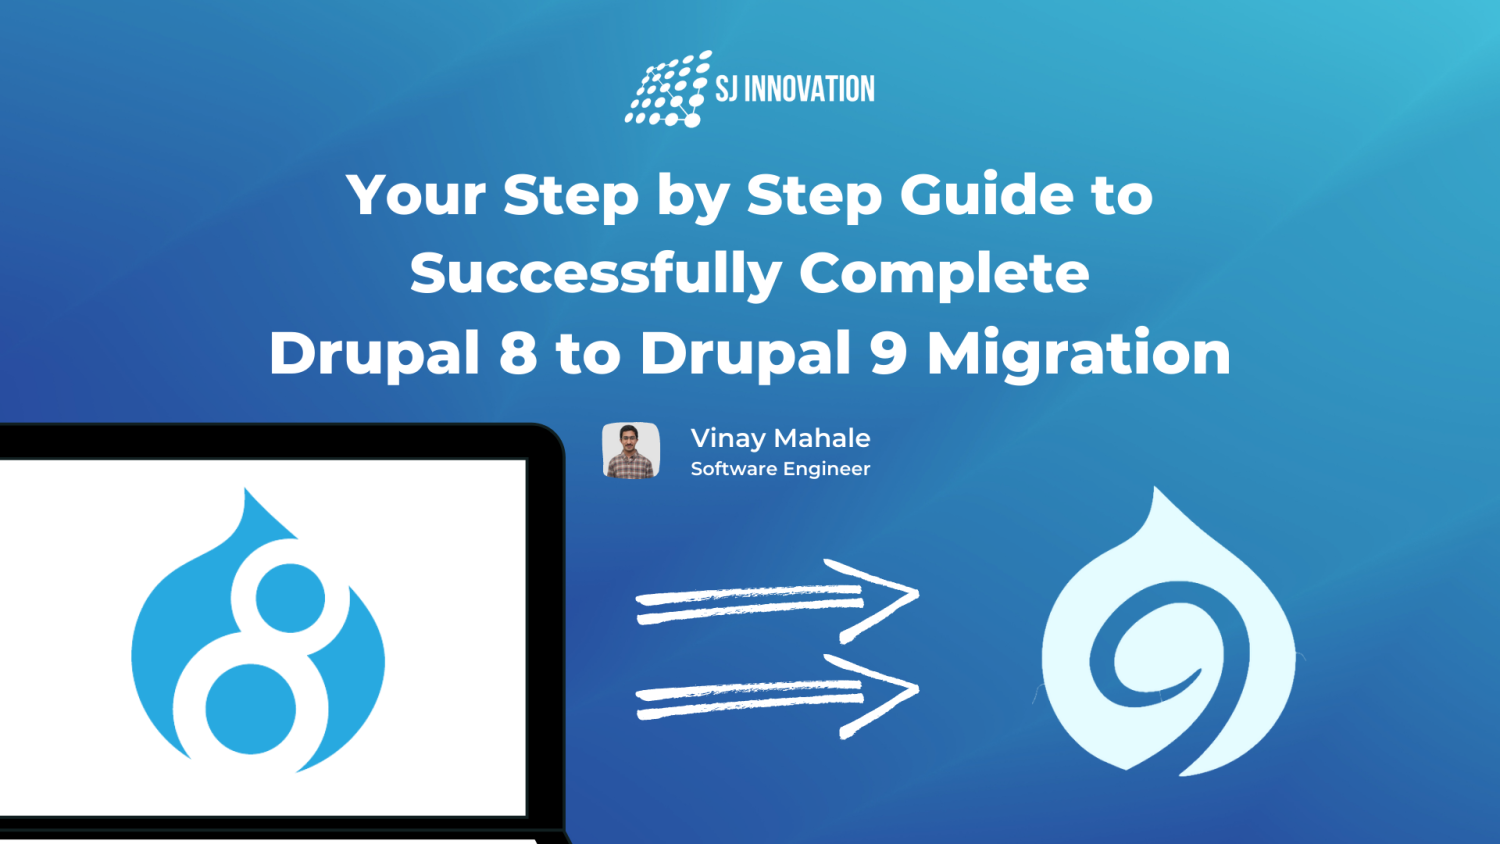 Drupal 8 to Drupal 9 Migration